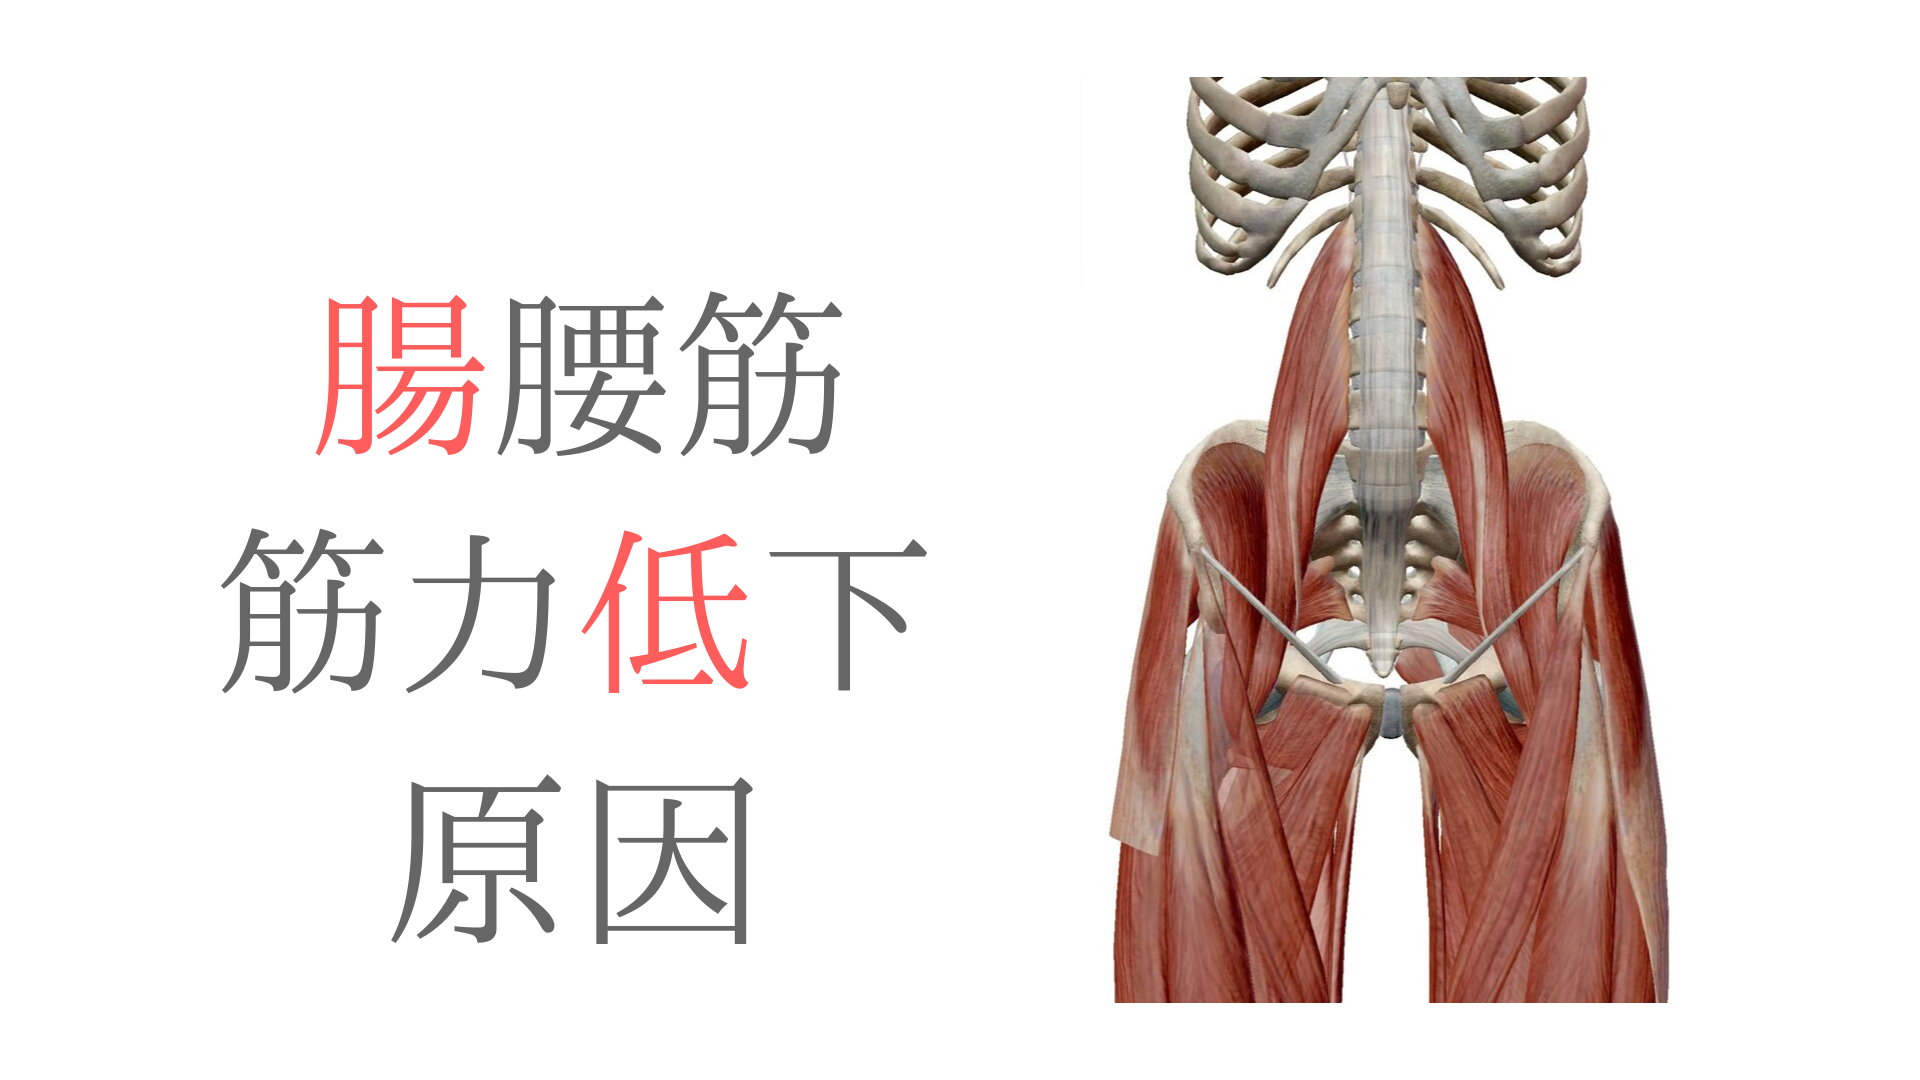 腸腰筋の筋力低下の要因を骨盤の動きから考えてみた 療法士活性化委員会